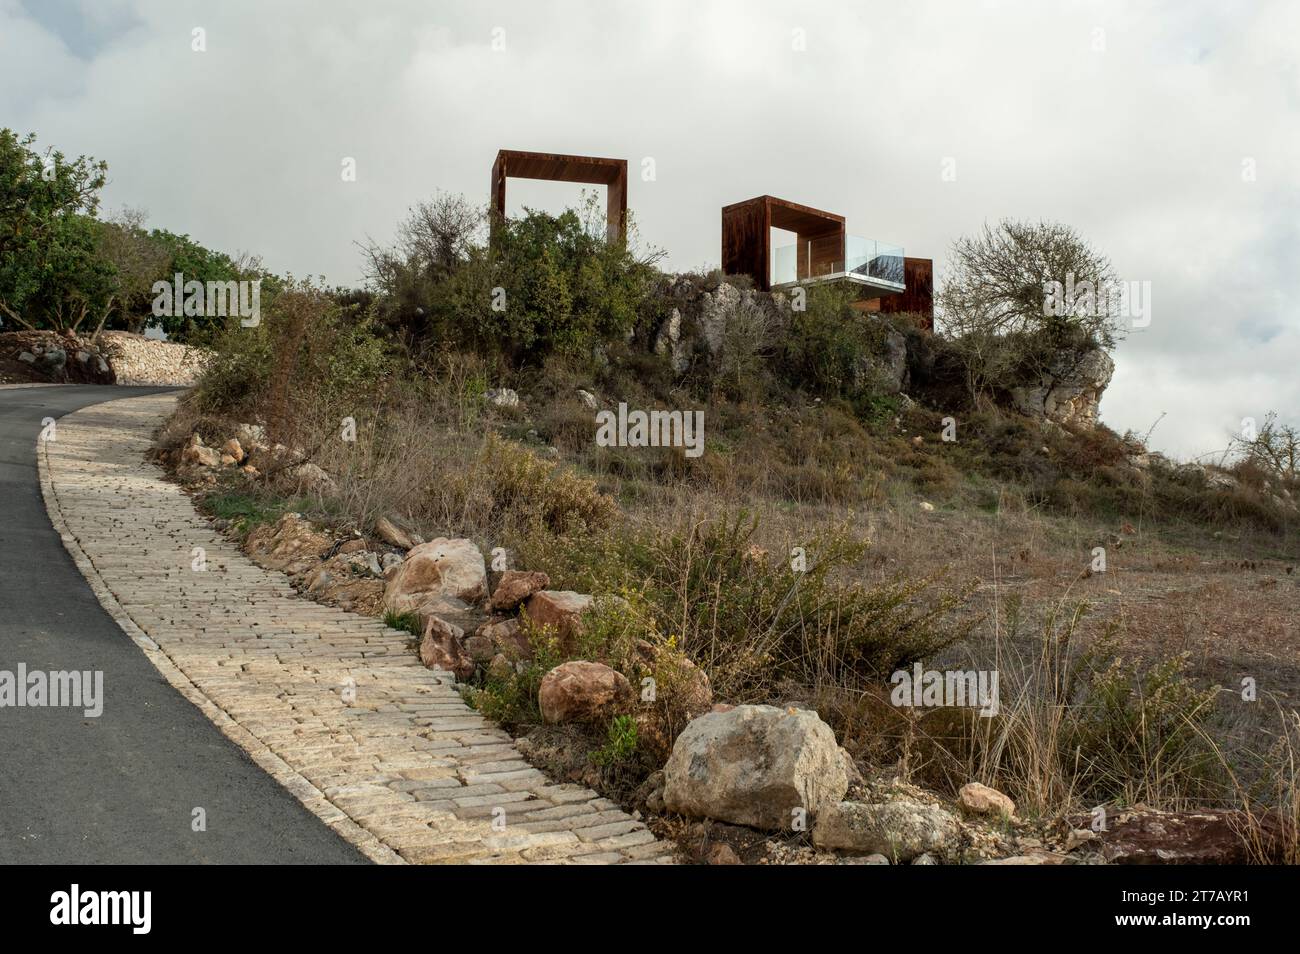 Piattaforme panoramiche all'aperto sulla strada tra il villaggio di Inia e la baia di Lara, Parco Nazionale di Akamas Cipro. Foto Stock